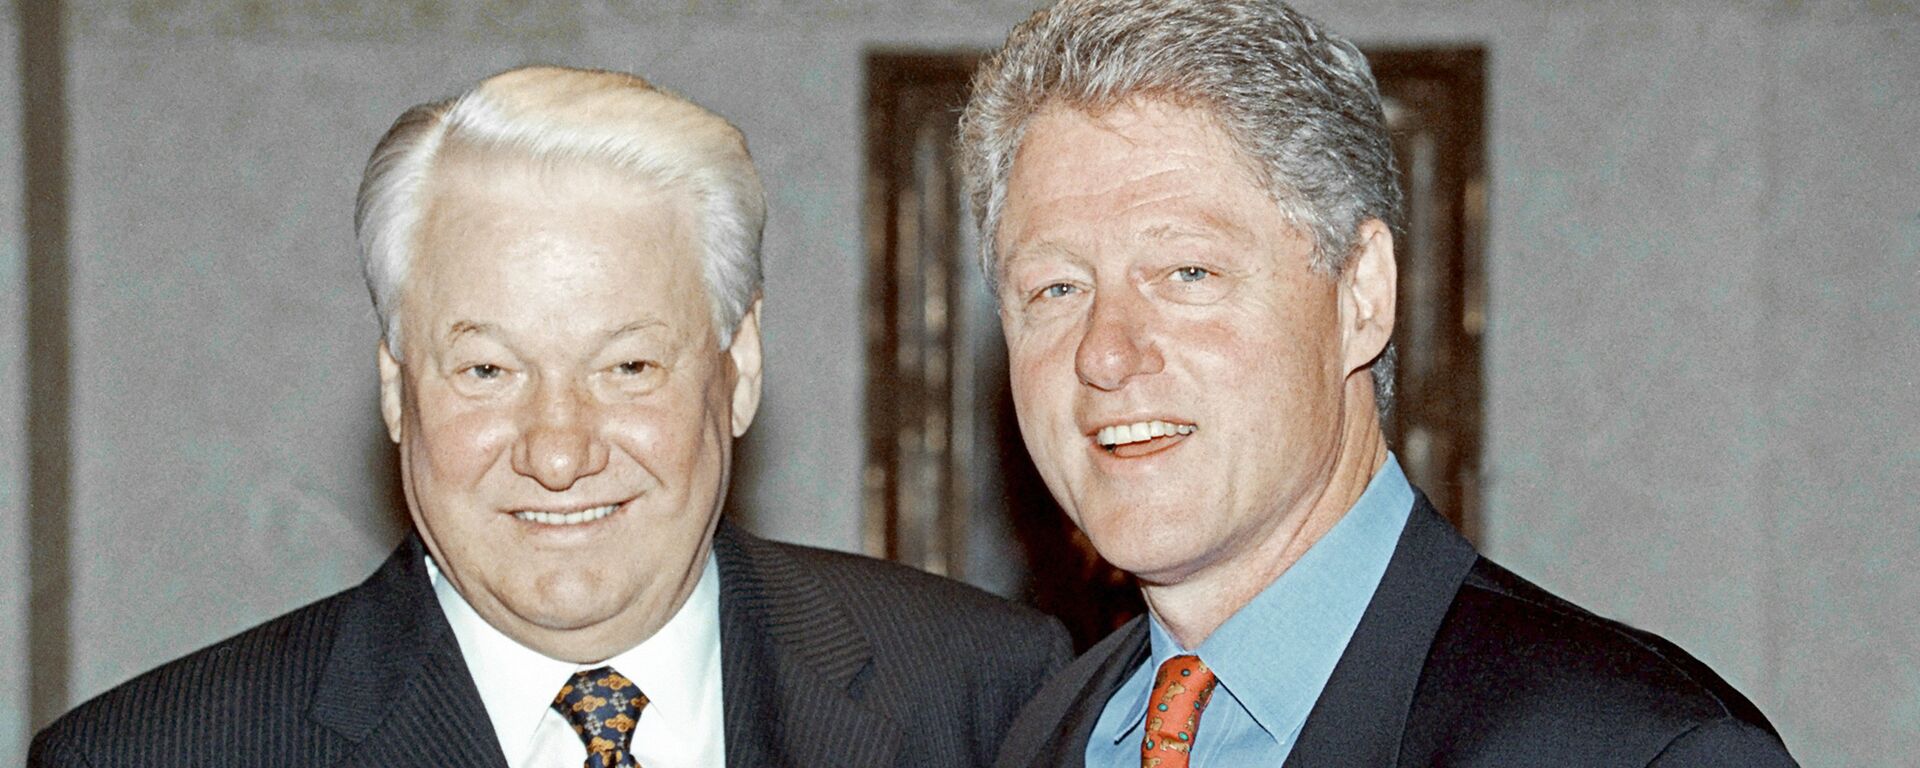 Председник Русије Борис Јељцин и председник САД Бил Клинтон током састанка у Великој Британији 1989. - Sputnik Србија, 1920, 31.08.2018